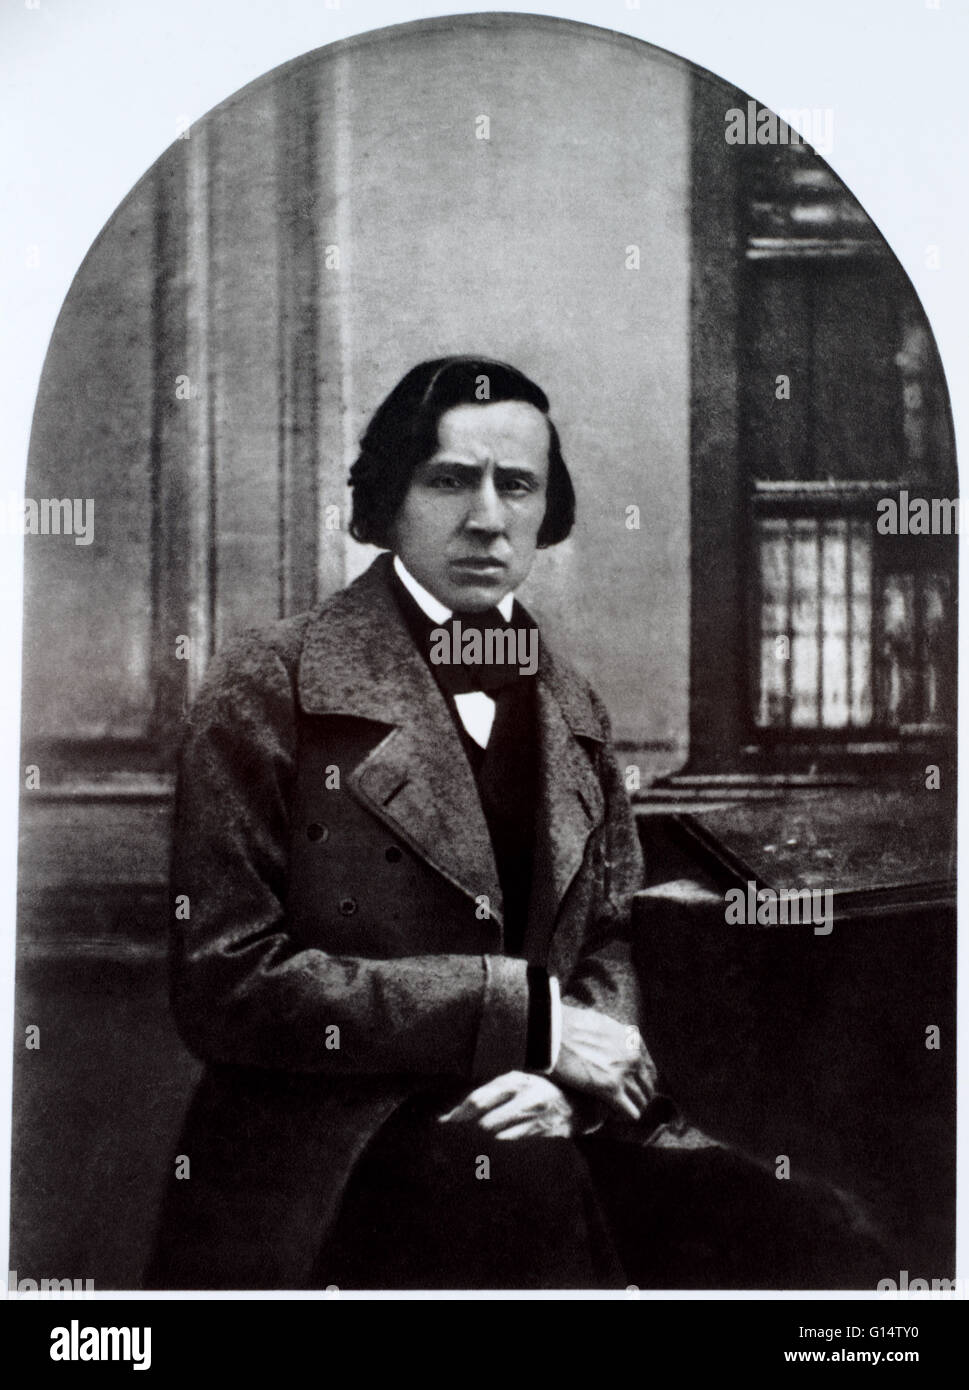 Nur bekannt Foto von Chopin, aufgenommen im Jahr seines Todes (an Tuberkulose) im Jahre 1849. Übernommen aus einer privaten Sammlung. Frédéric François Chopin (1. März 1810 - 17. Oktober 1849) war ein polnischer Komponist und Klaviervirtuose. Er gilt als o Stockfoto